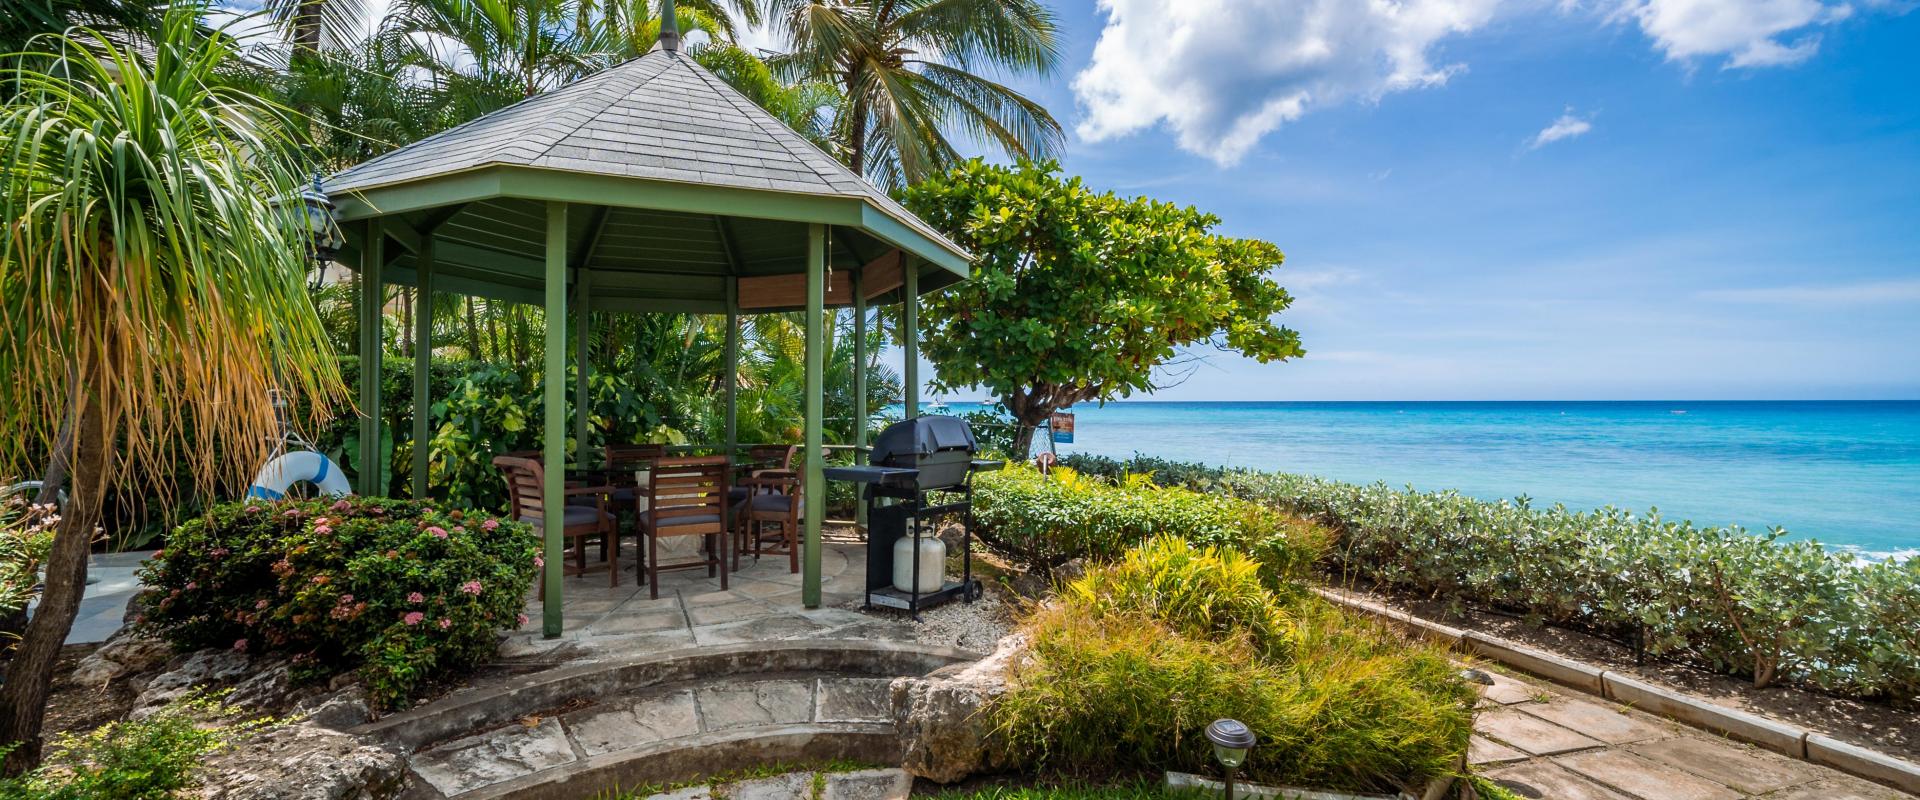 Barbados Beachfront Vacation Rental Villa Seawards Gazebo with Oceanview